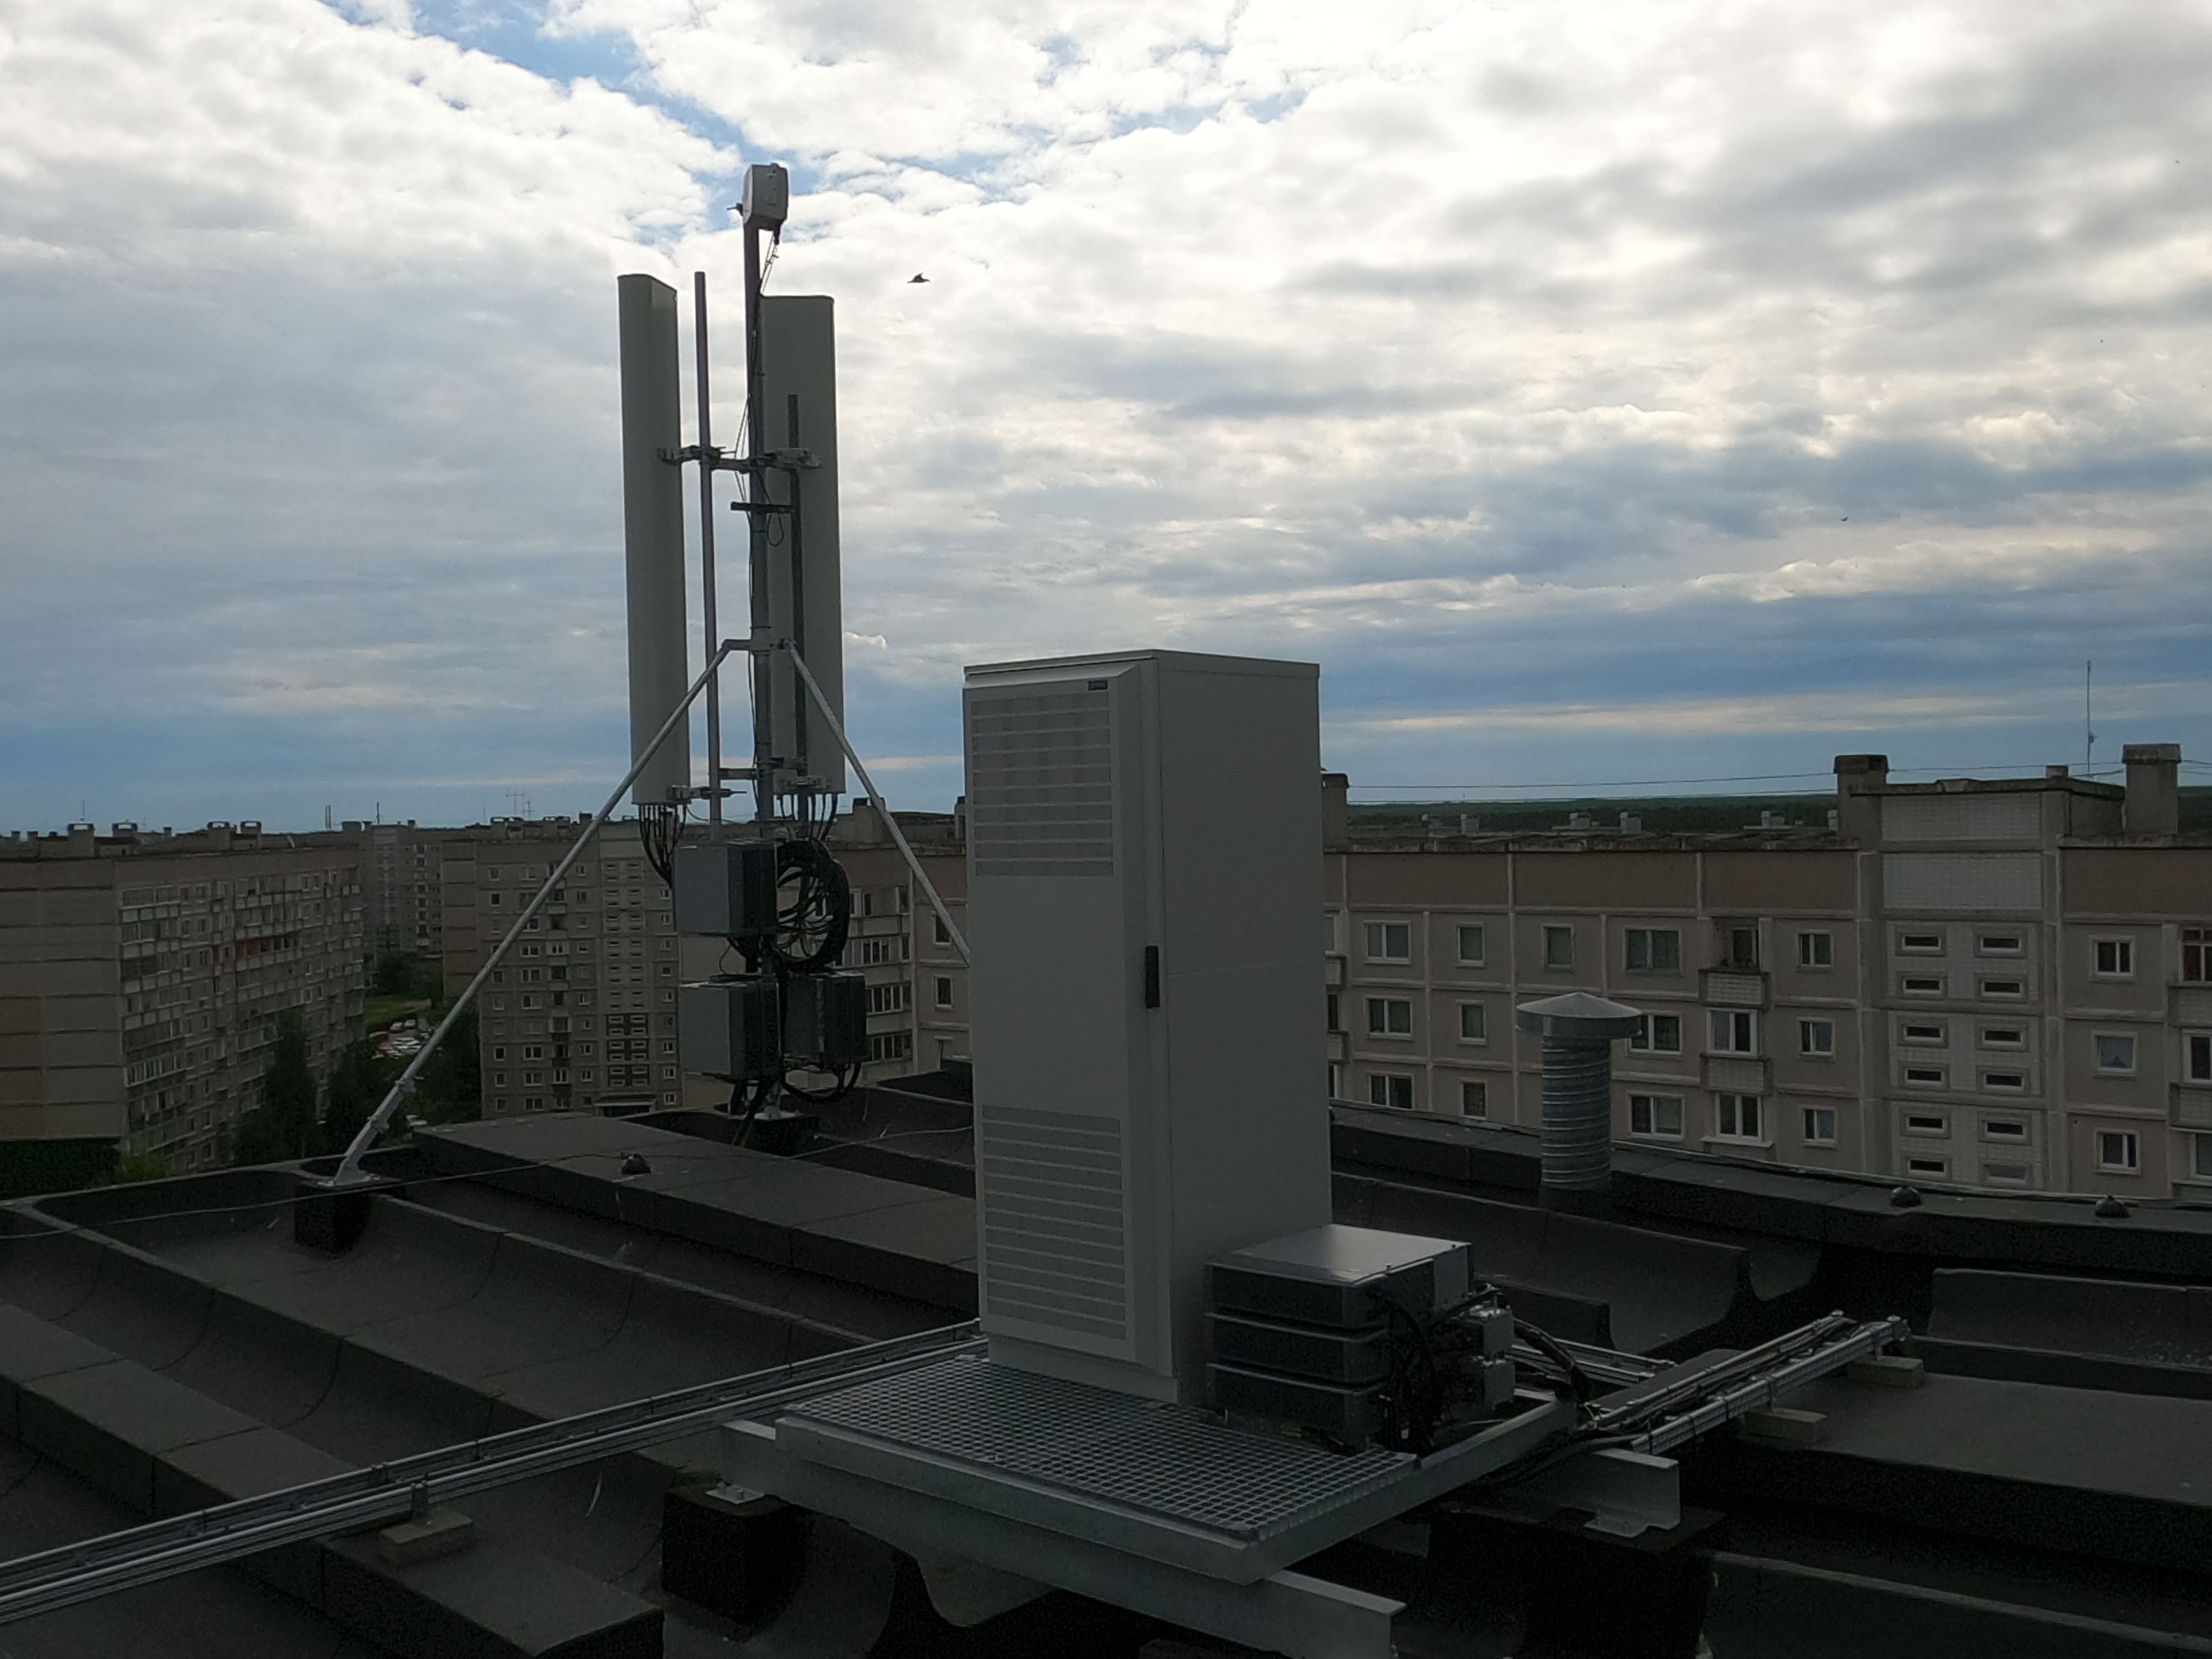 Tā izskatās TELE2 antena uz mājas jumta Īslīces ielā 5. Katru mēnesi māja saņem no operatora 350 eiro